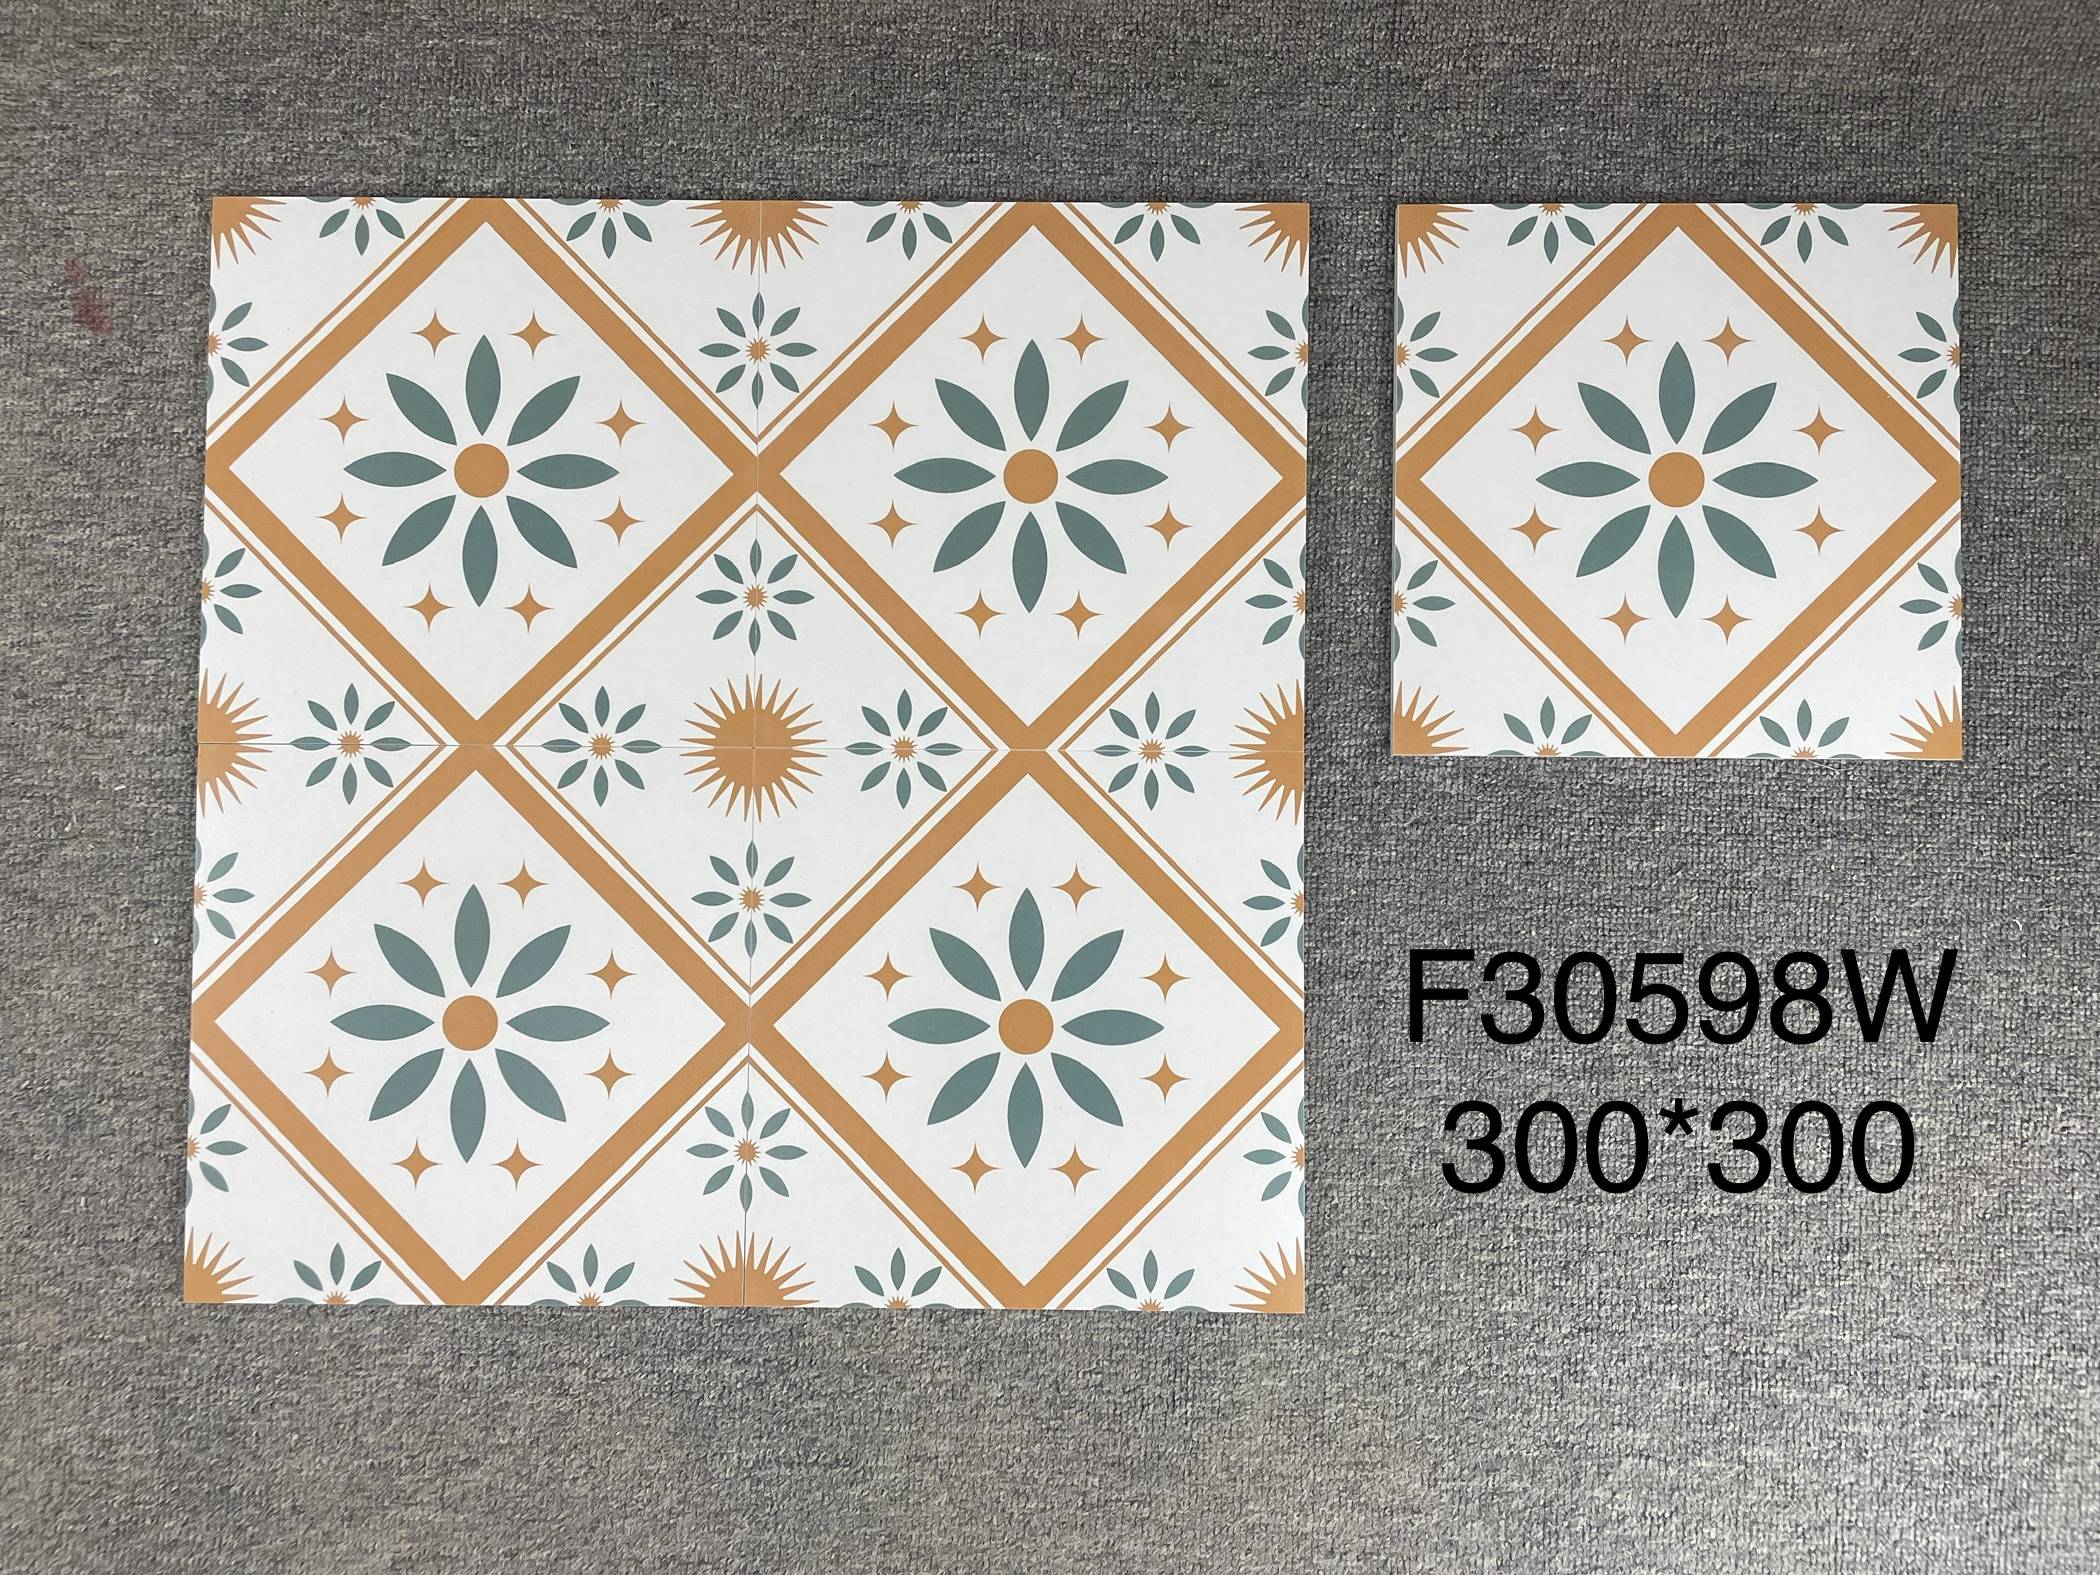 中國佛山瓷磚 China Foshan Tiles Encaustic Tiles 啞光地磚 牆磚F30596W F30597W F30598W F30599W花磚 裝飾磚 混裝發貨 隨機圖案 30×30cm